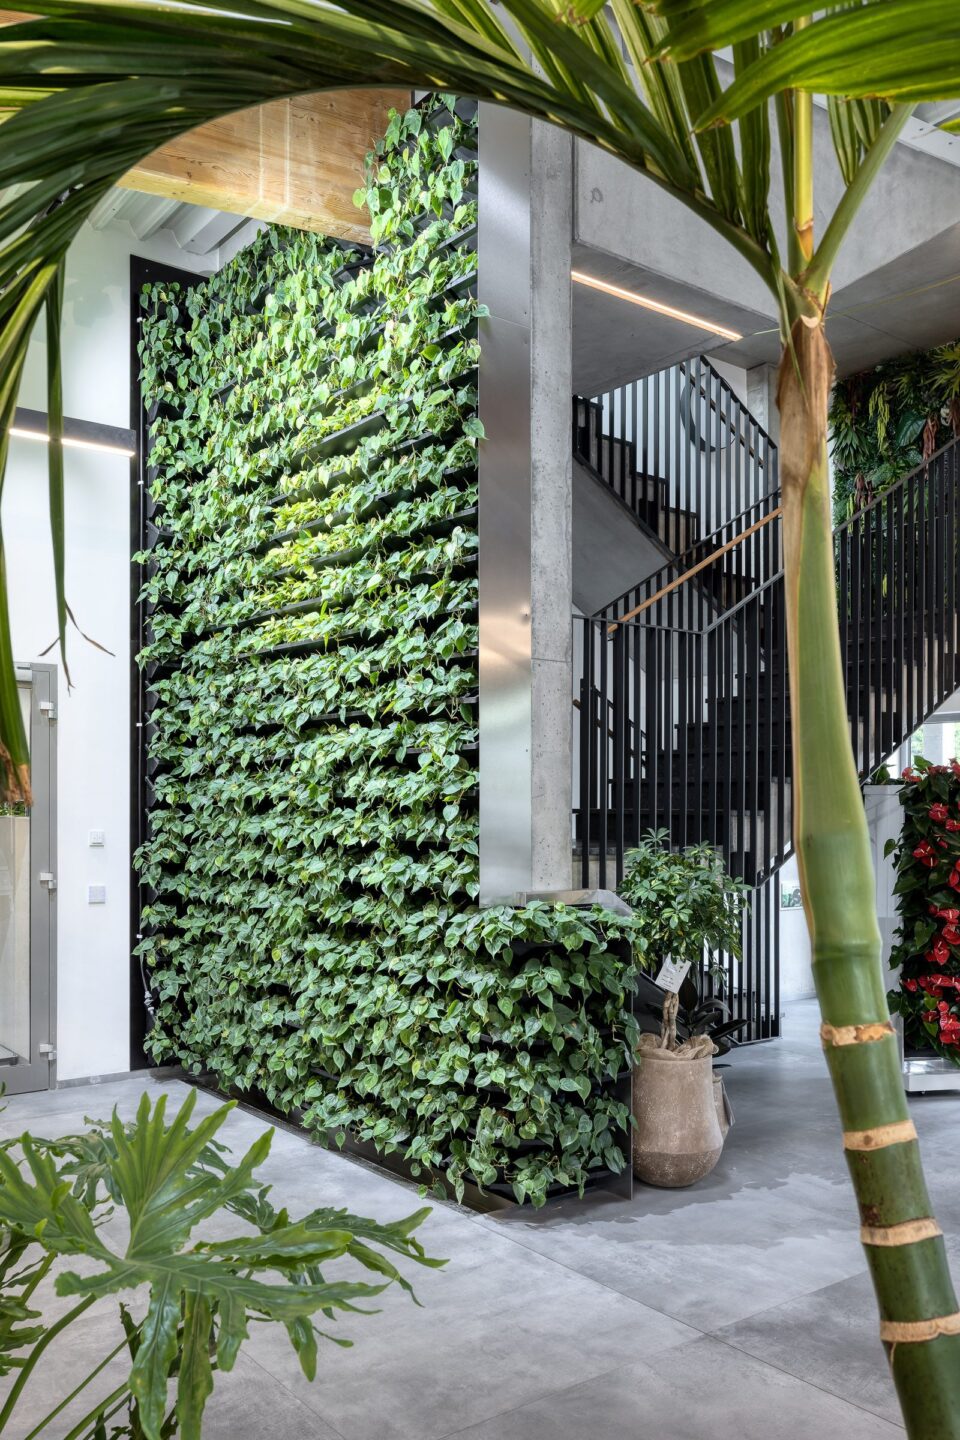 Es zeigt, wie moderne Büros zu lebendigen grünen Oasen werden können, in denen Menschen gerne arbeiten